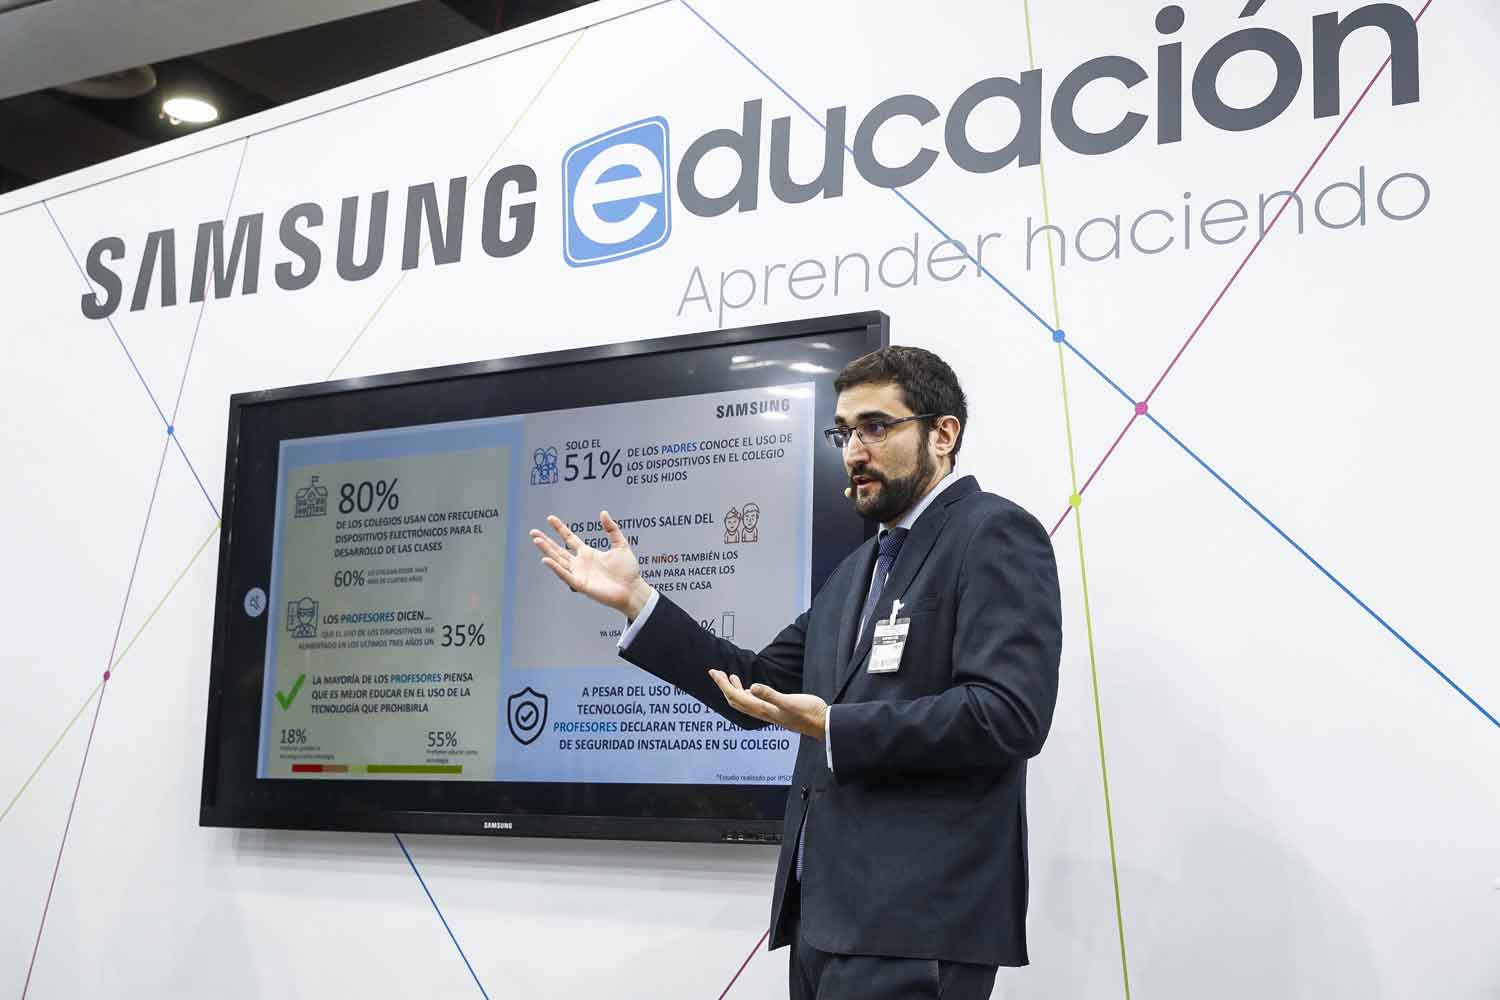 Samsung present en el marco de SIMO Educacin el Estudio sobre Seguridad Informtica en las Aulas